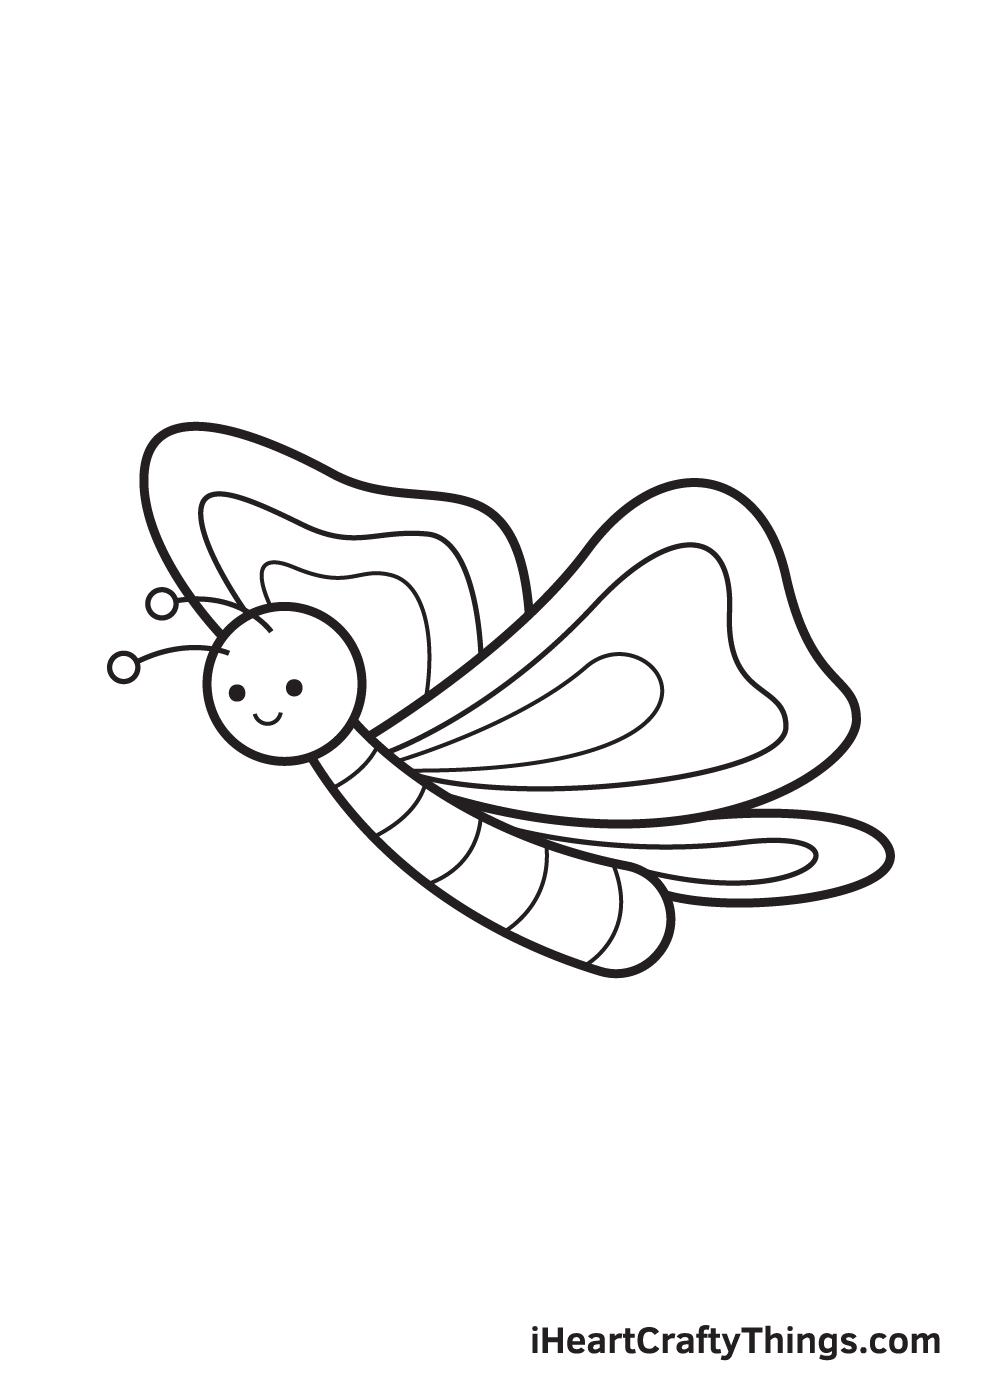 Butterfly DRAWING – STEP 9 - Hướng dẫn cụ thể kiểu vẽ con cái bướm giản dị và đơn giản với 9 bước cơ bản